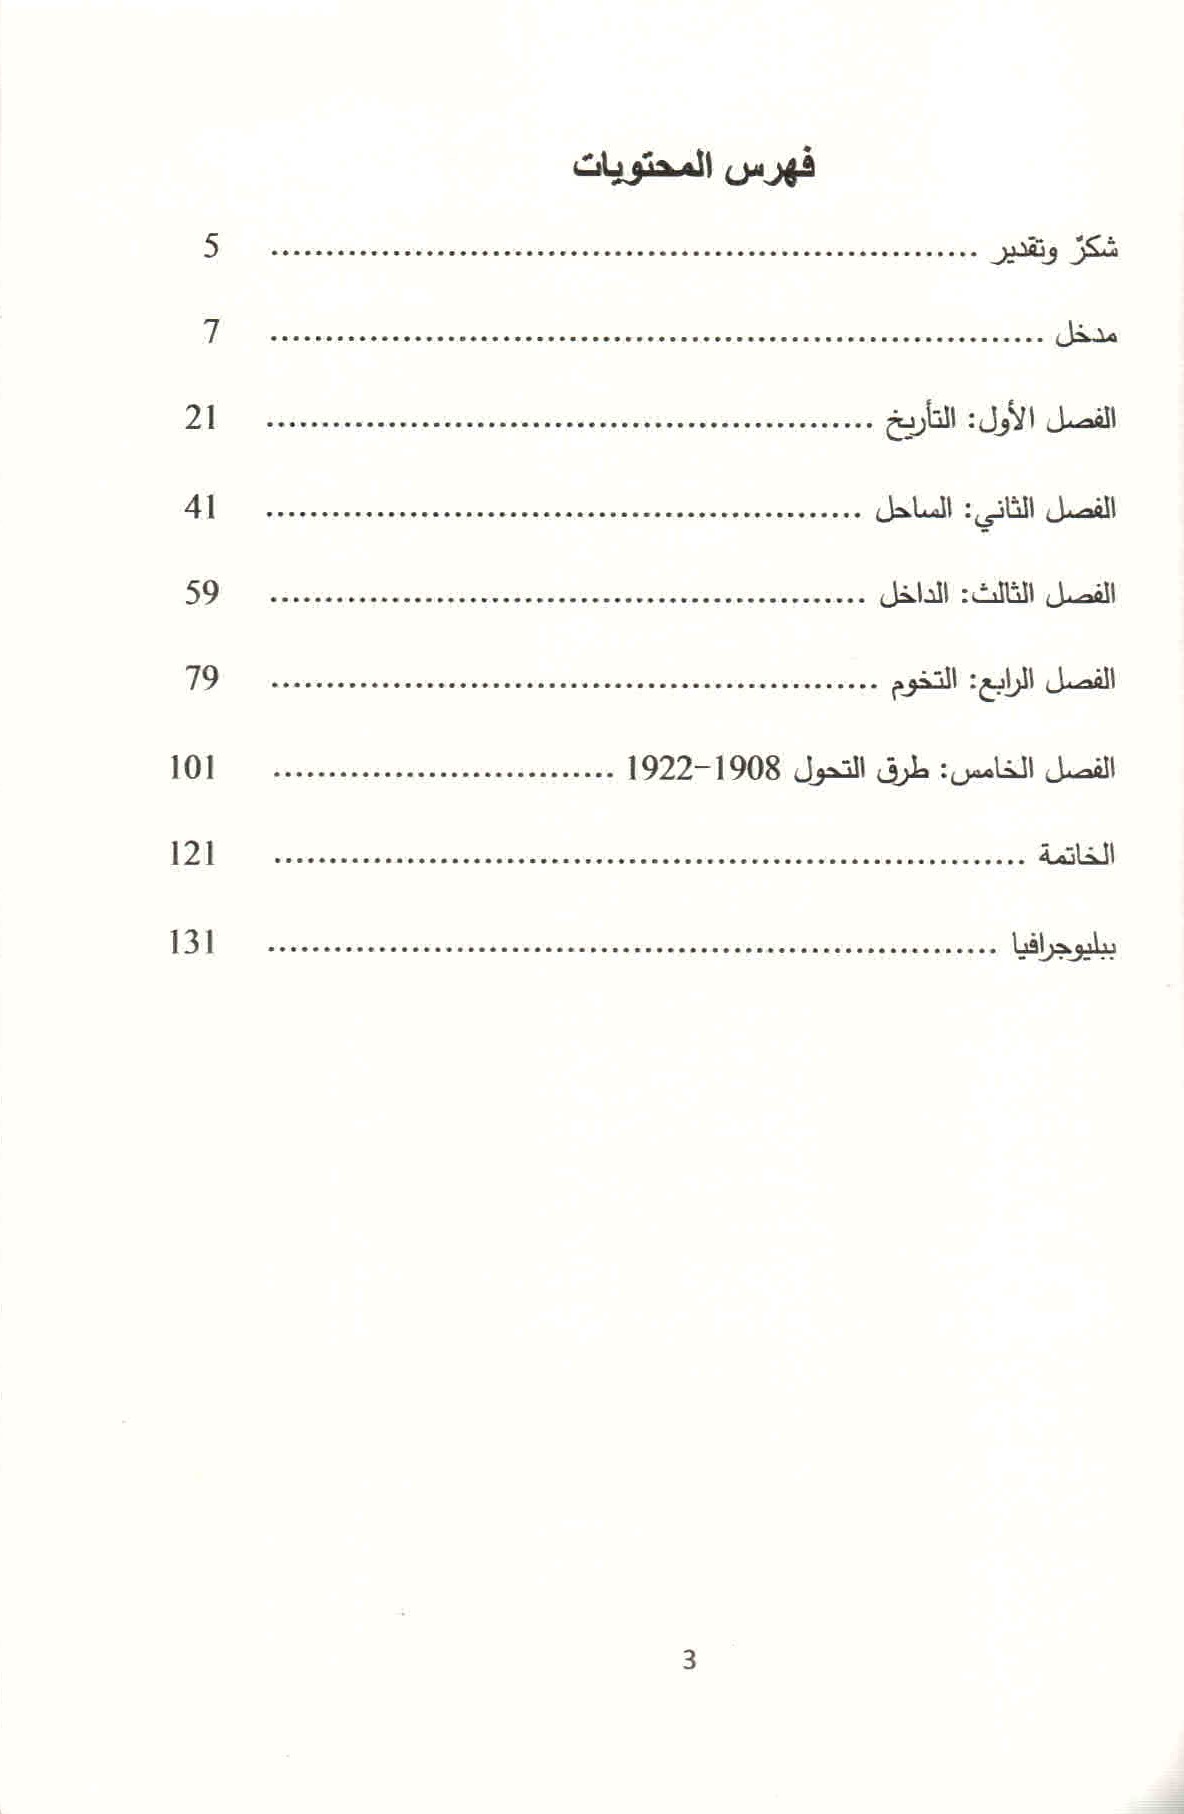 ص. 3 قائمة محتويات كتاب إعادة ترسيم الشرق الأوسط العثماني.